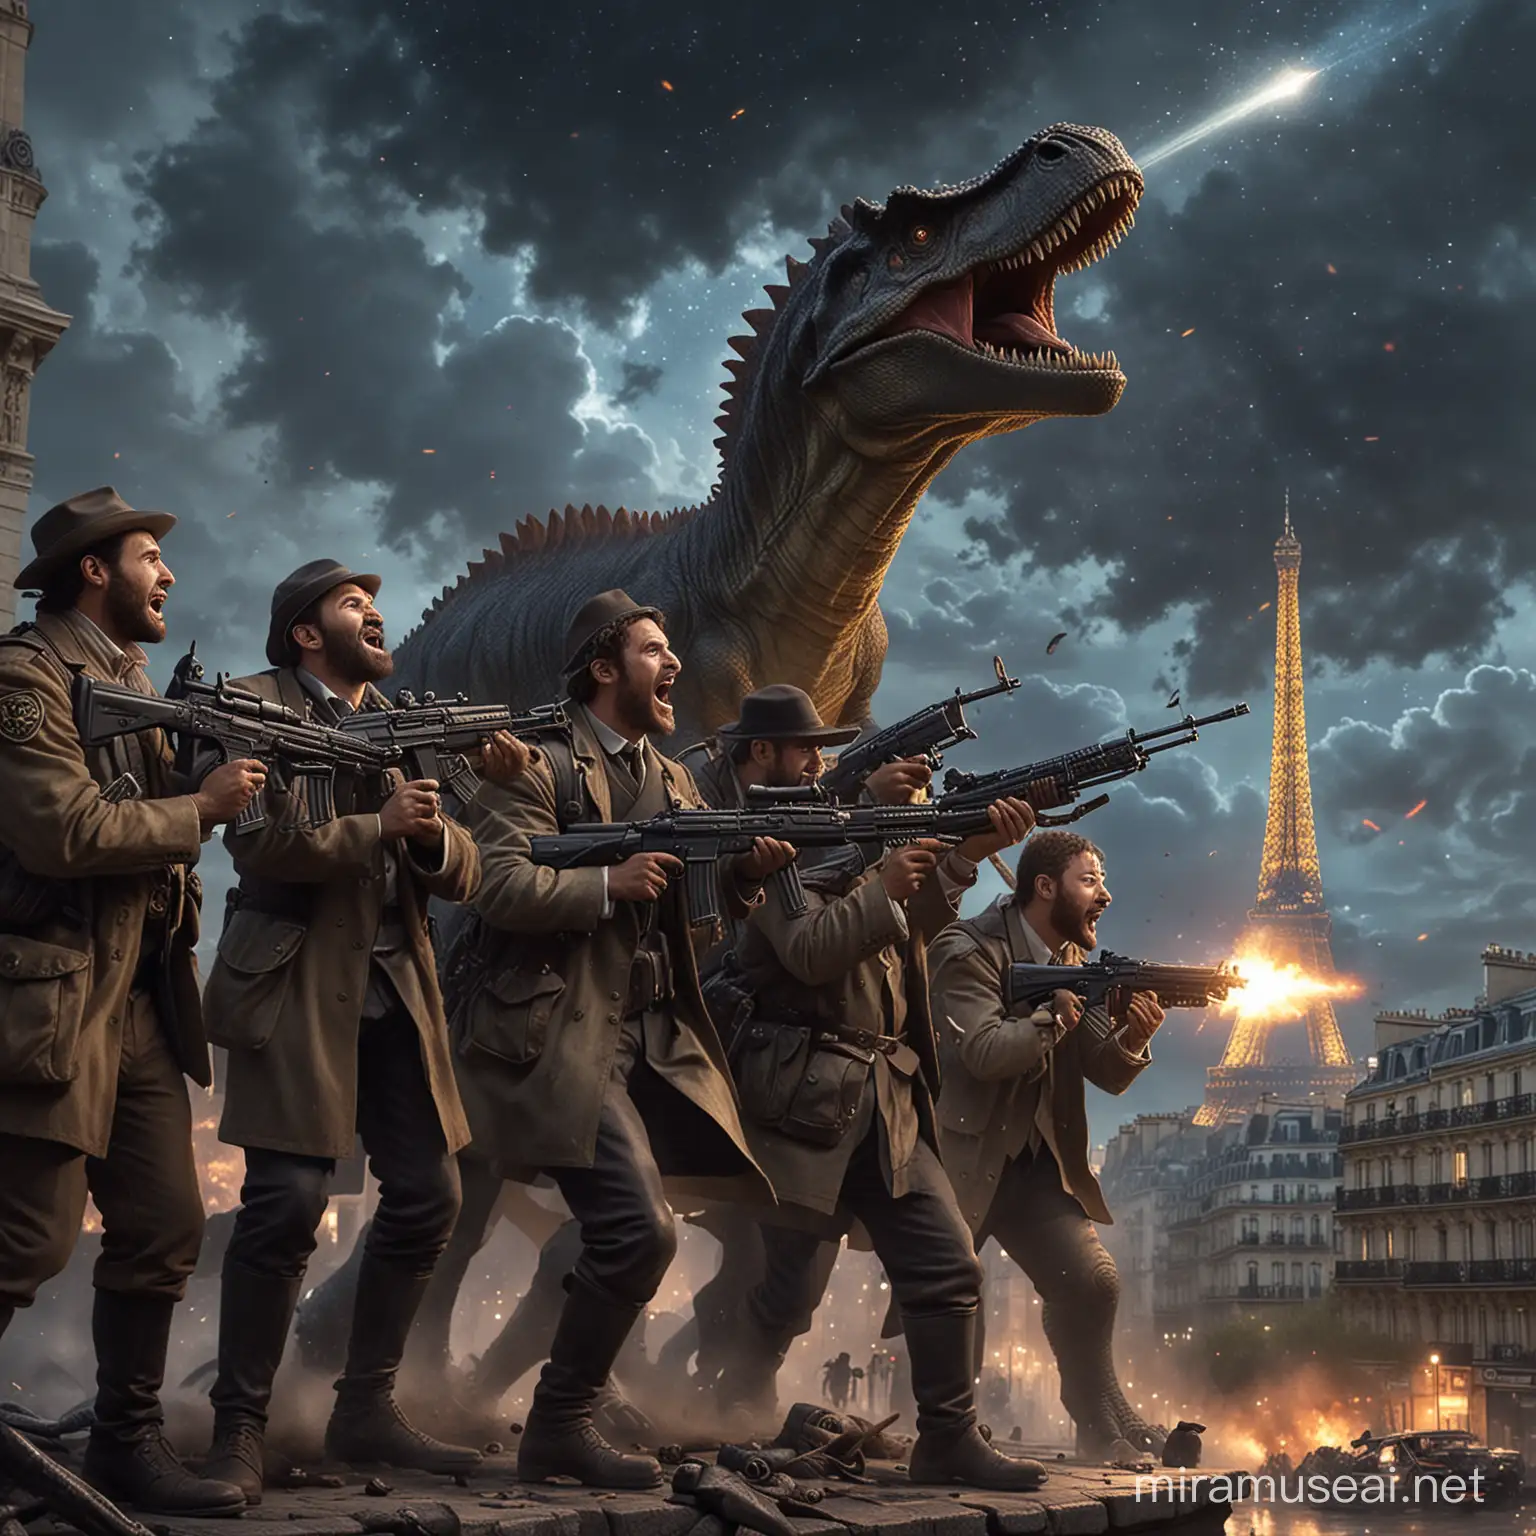 Cayborg Jews Riding Dinosaurs with Kalashnikovs in Paris Night Sky